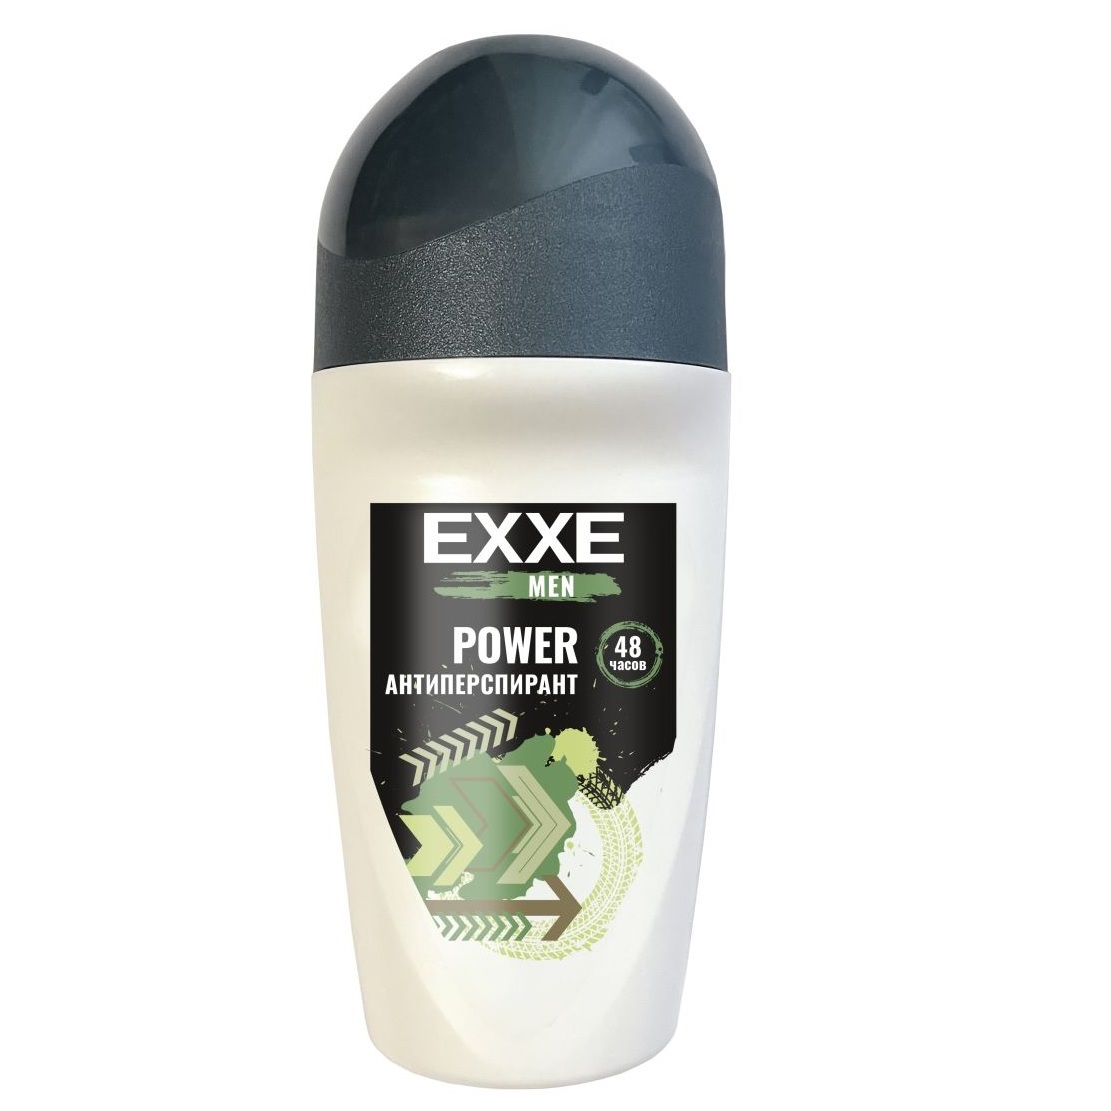 Дезодорант Exxe Men Power антиперспирант, роликовый, мужской, 50 мл cool breeze дезодорант спрей мужской power balance 200 0